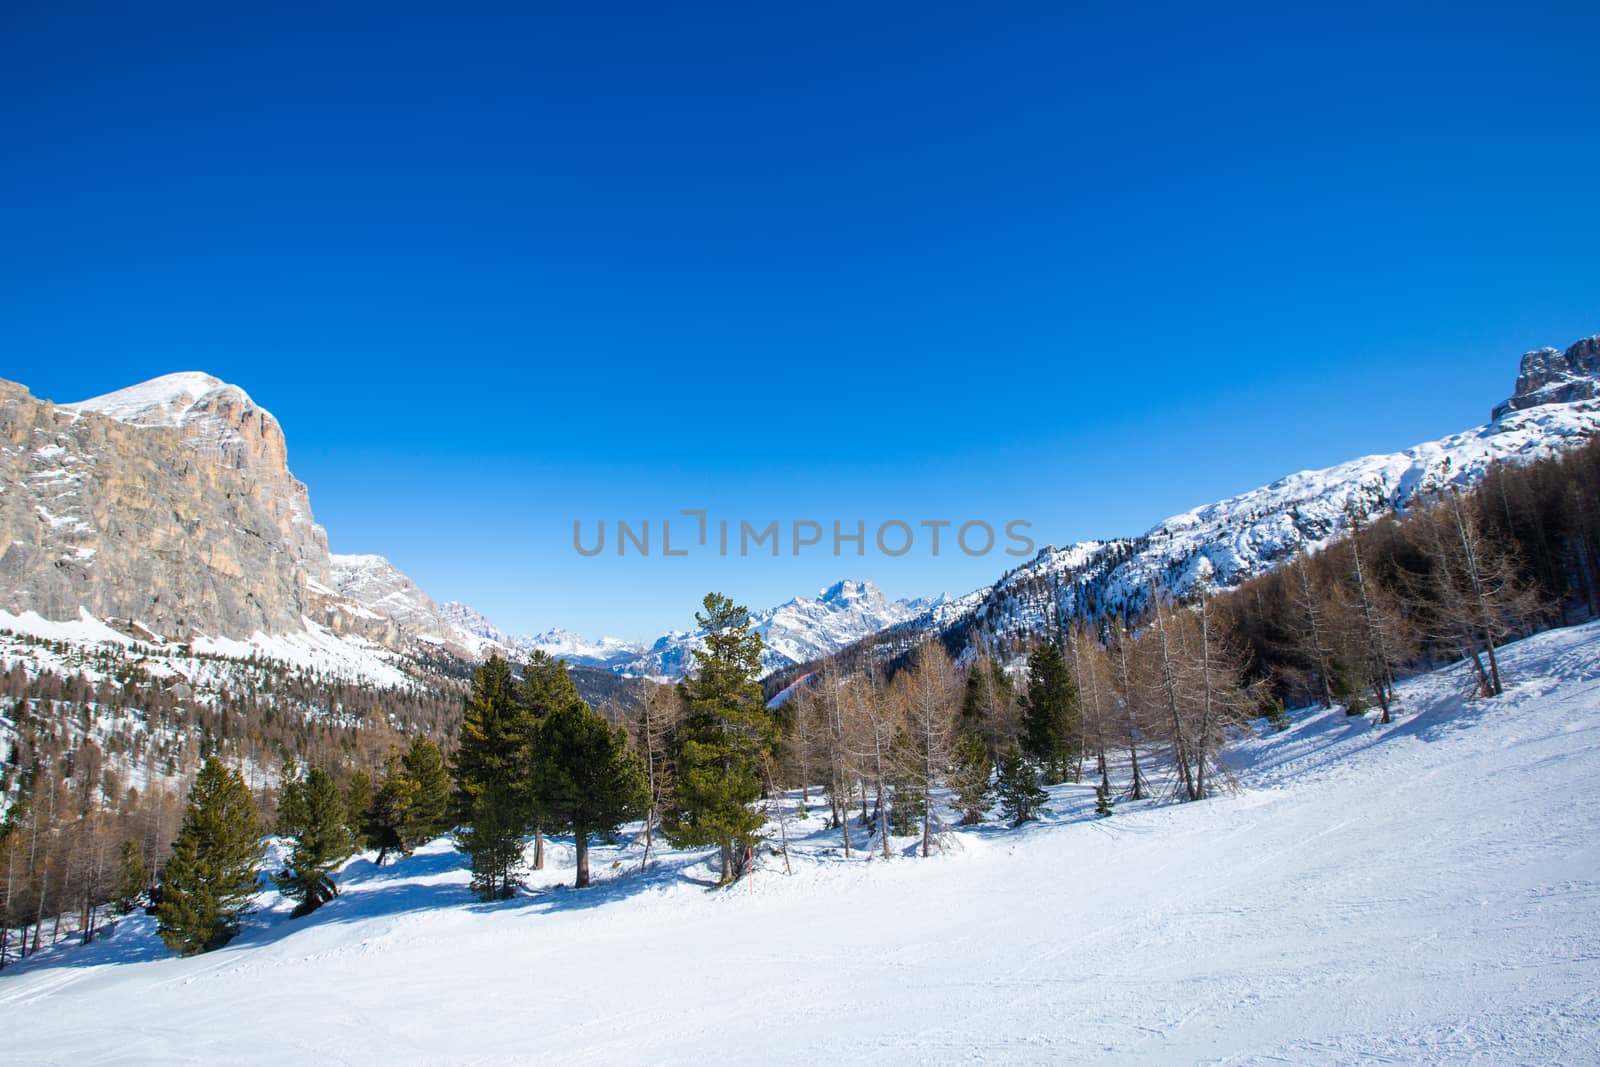 Dolomites winter mountains ski resort by destillat